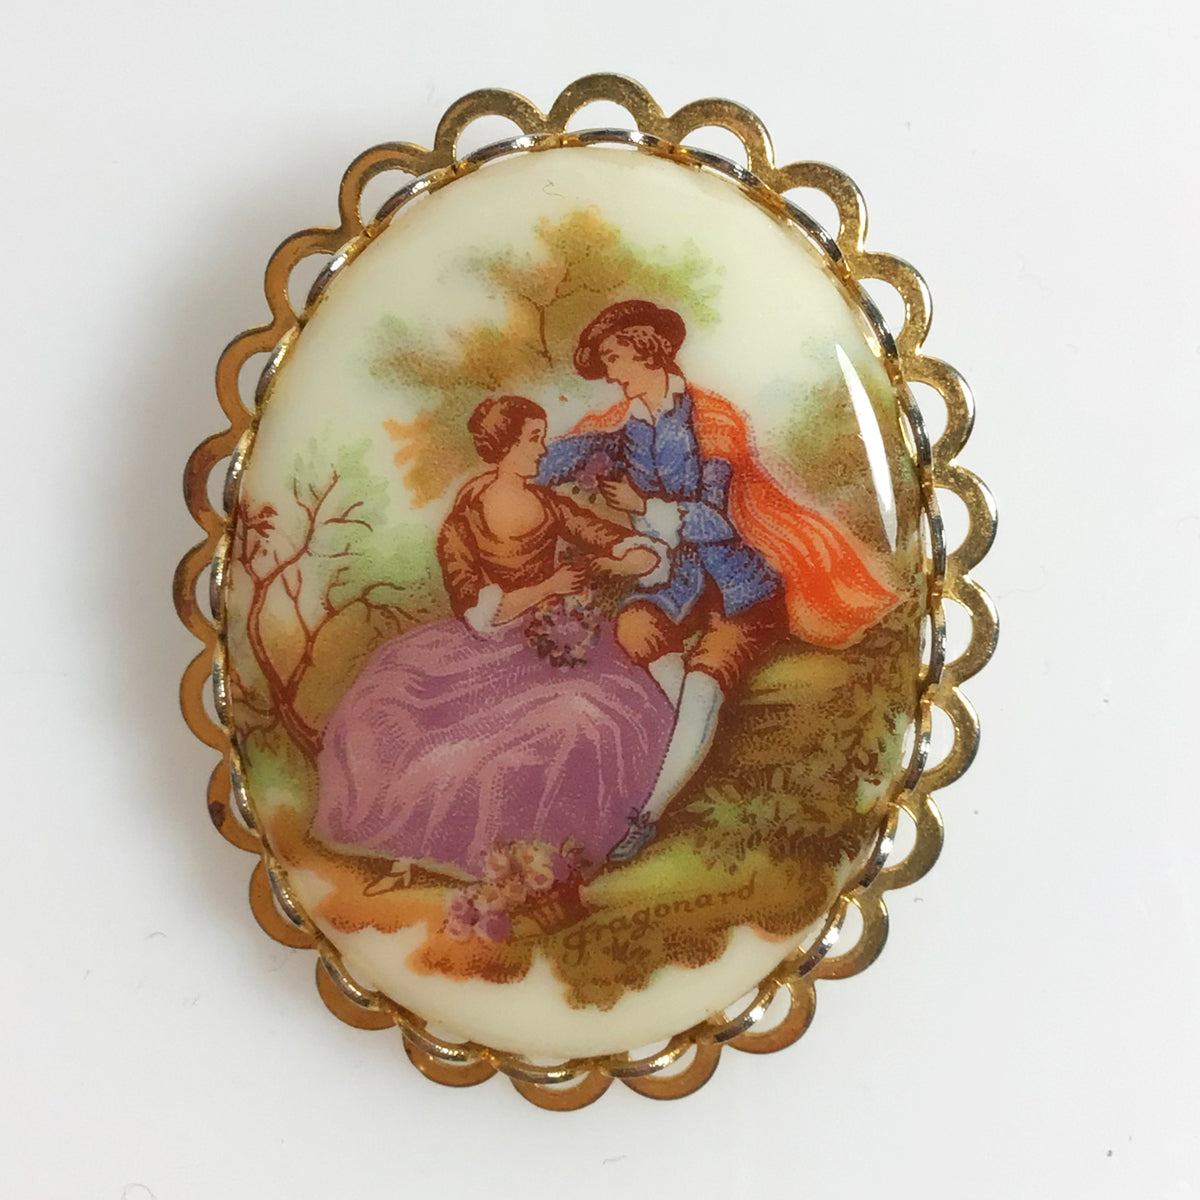 Limoges porcelain brooch Fragonard image of Courting Couple